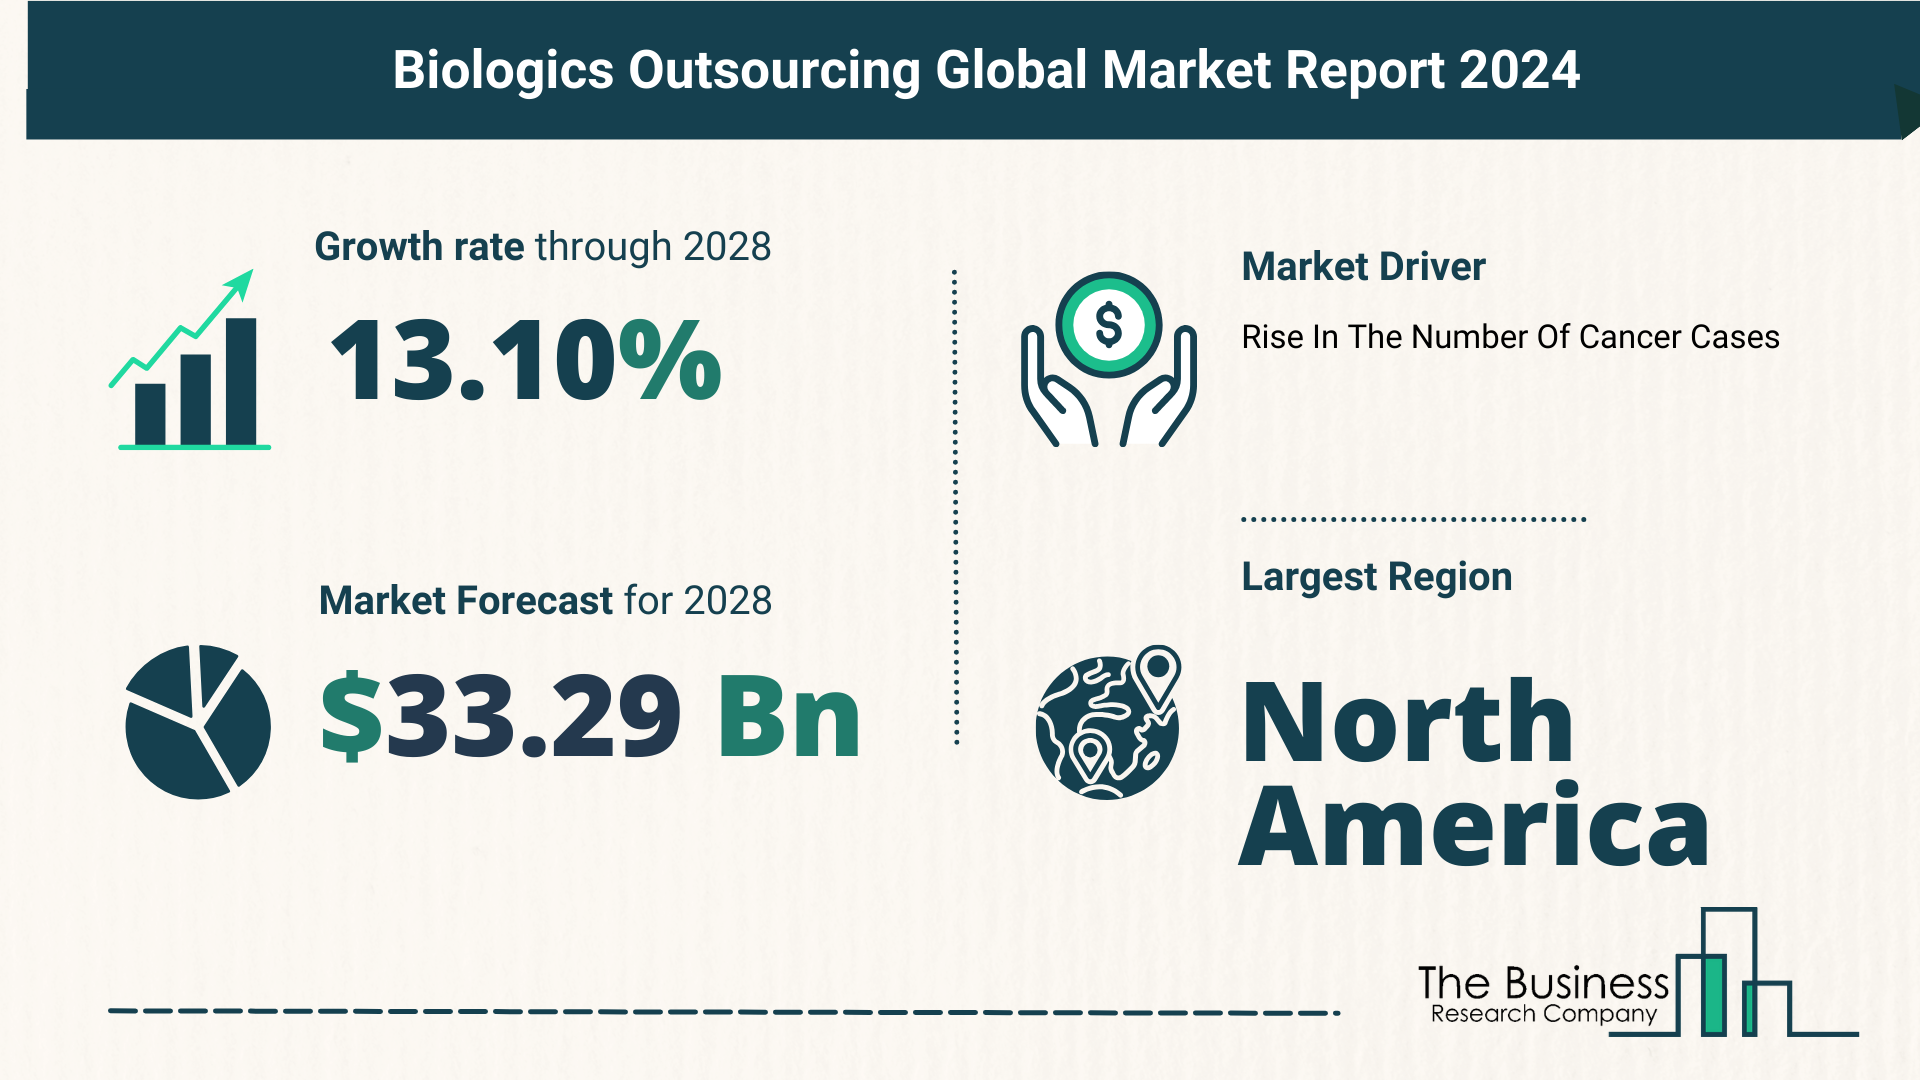 Global Biologics Outsourcing Market